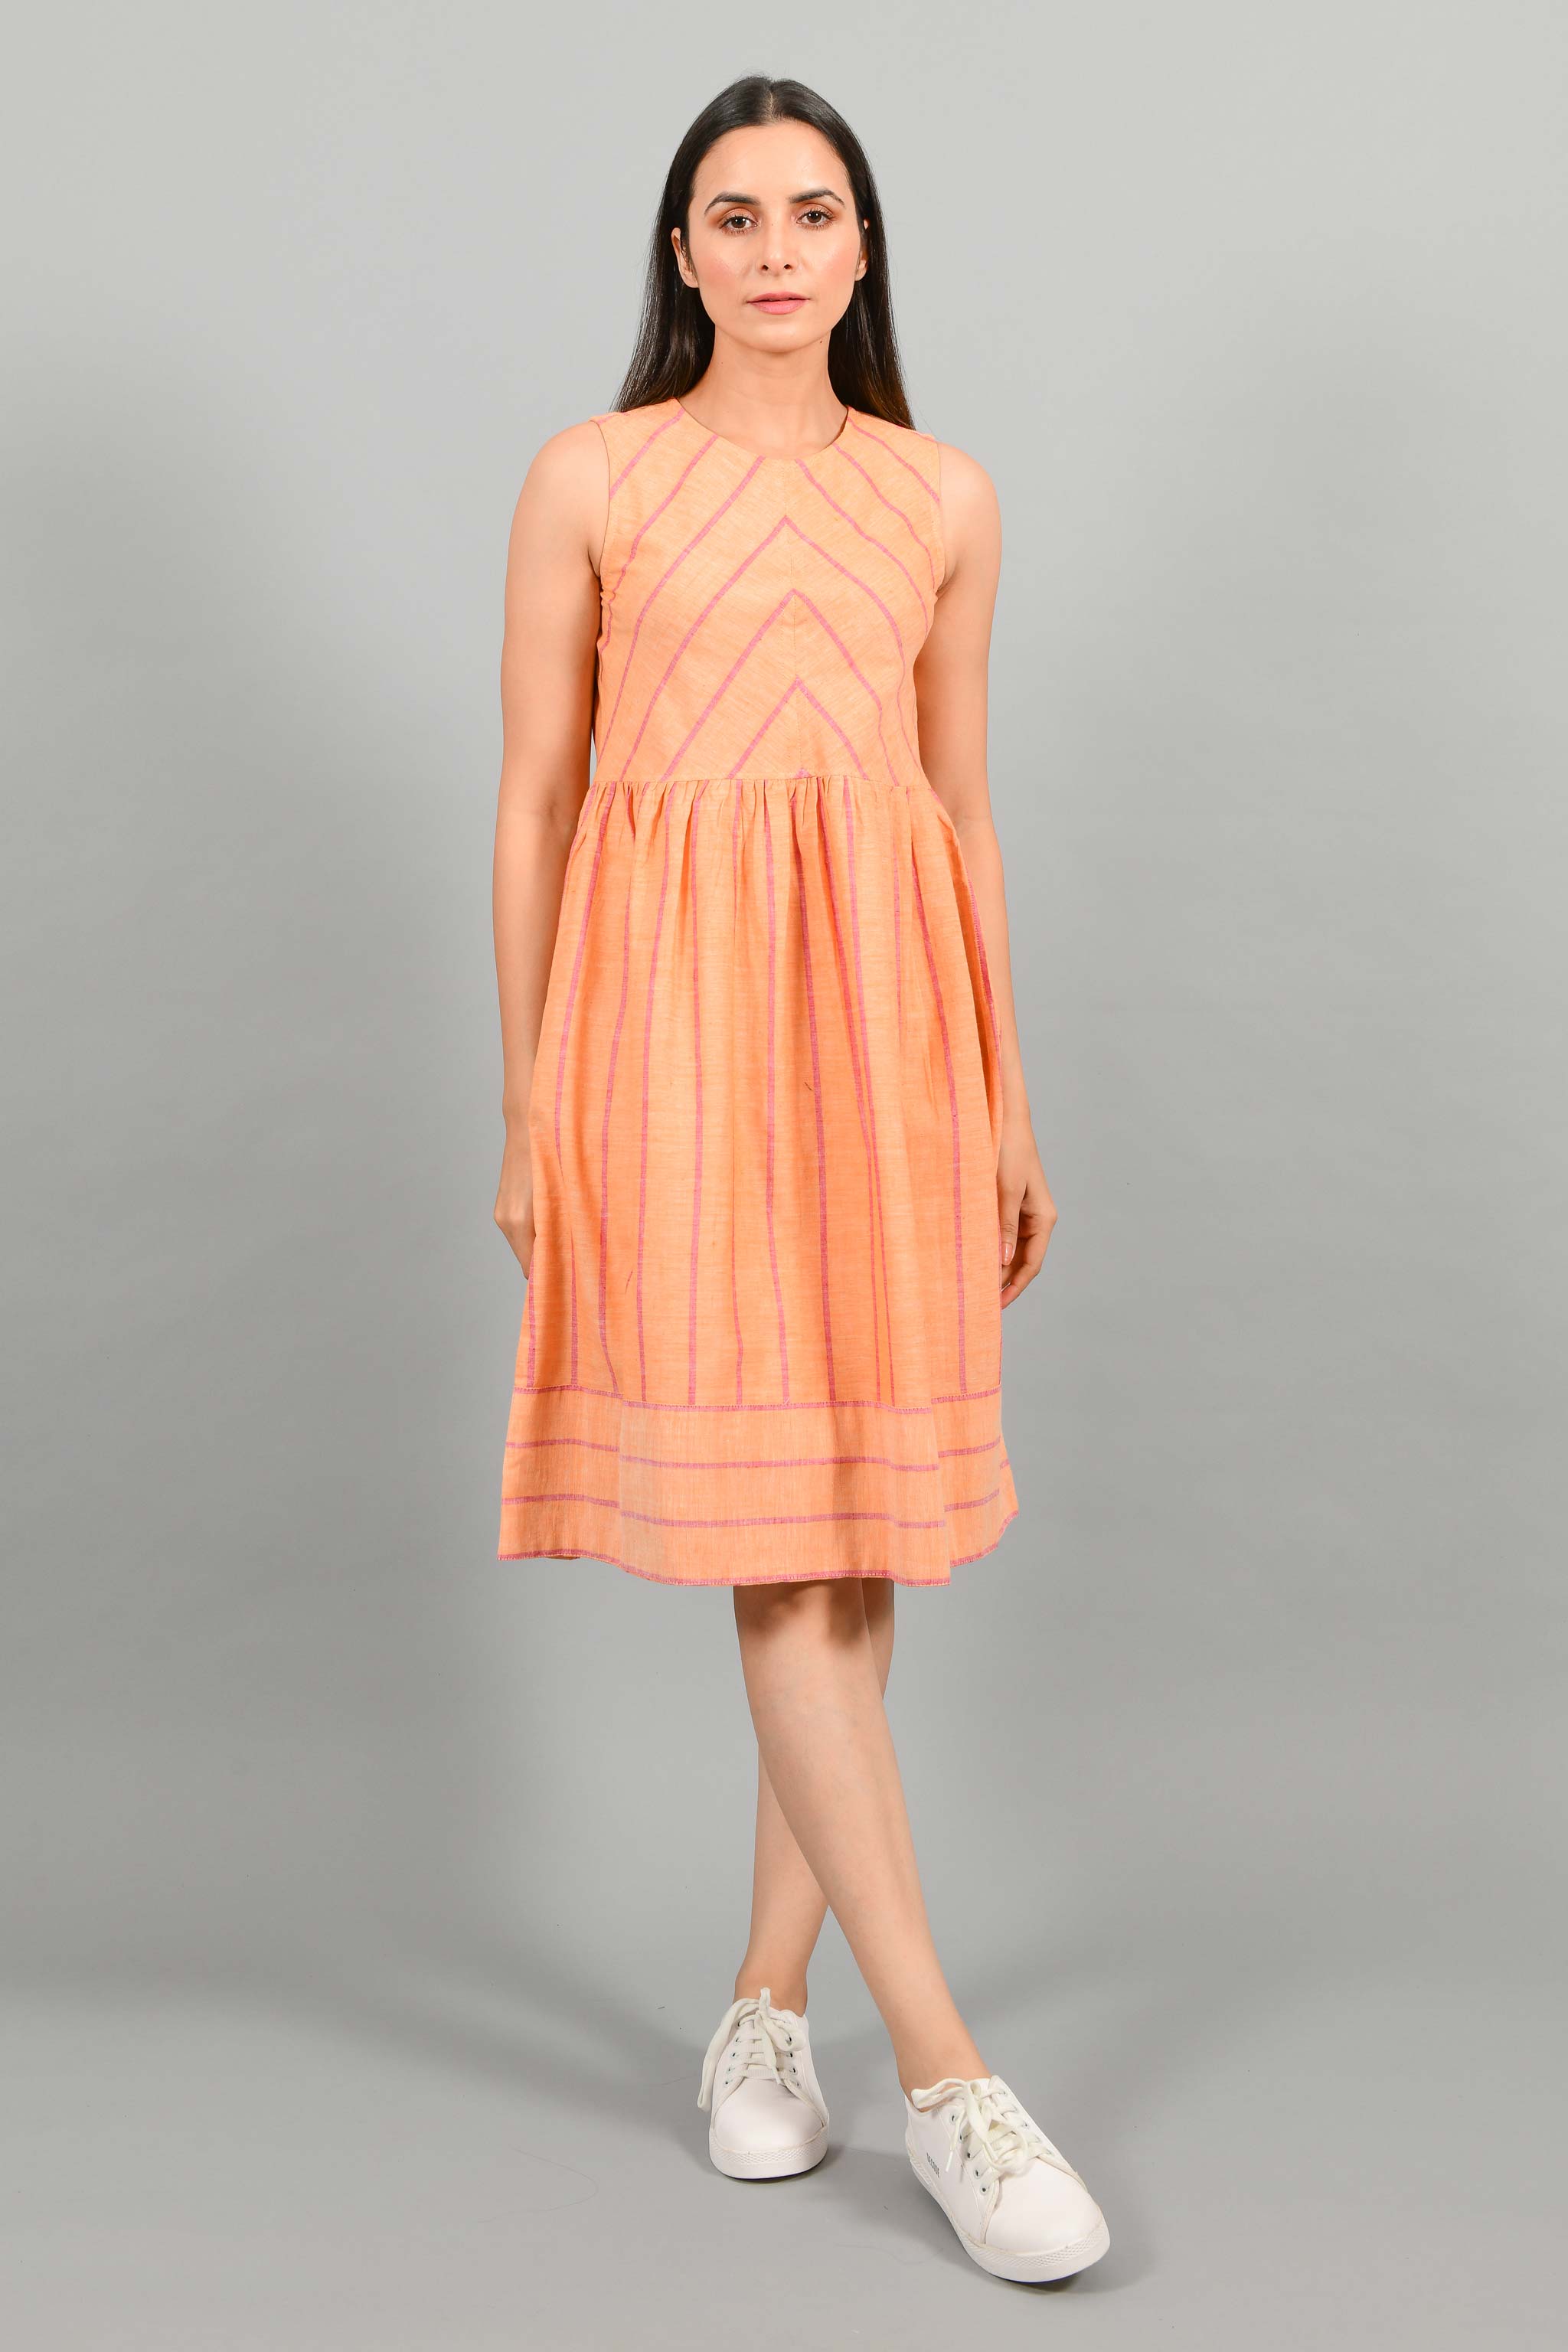 Buy Cotton Dresses Online in India - PinkCactii – PINKCACTII